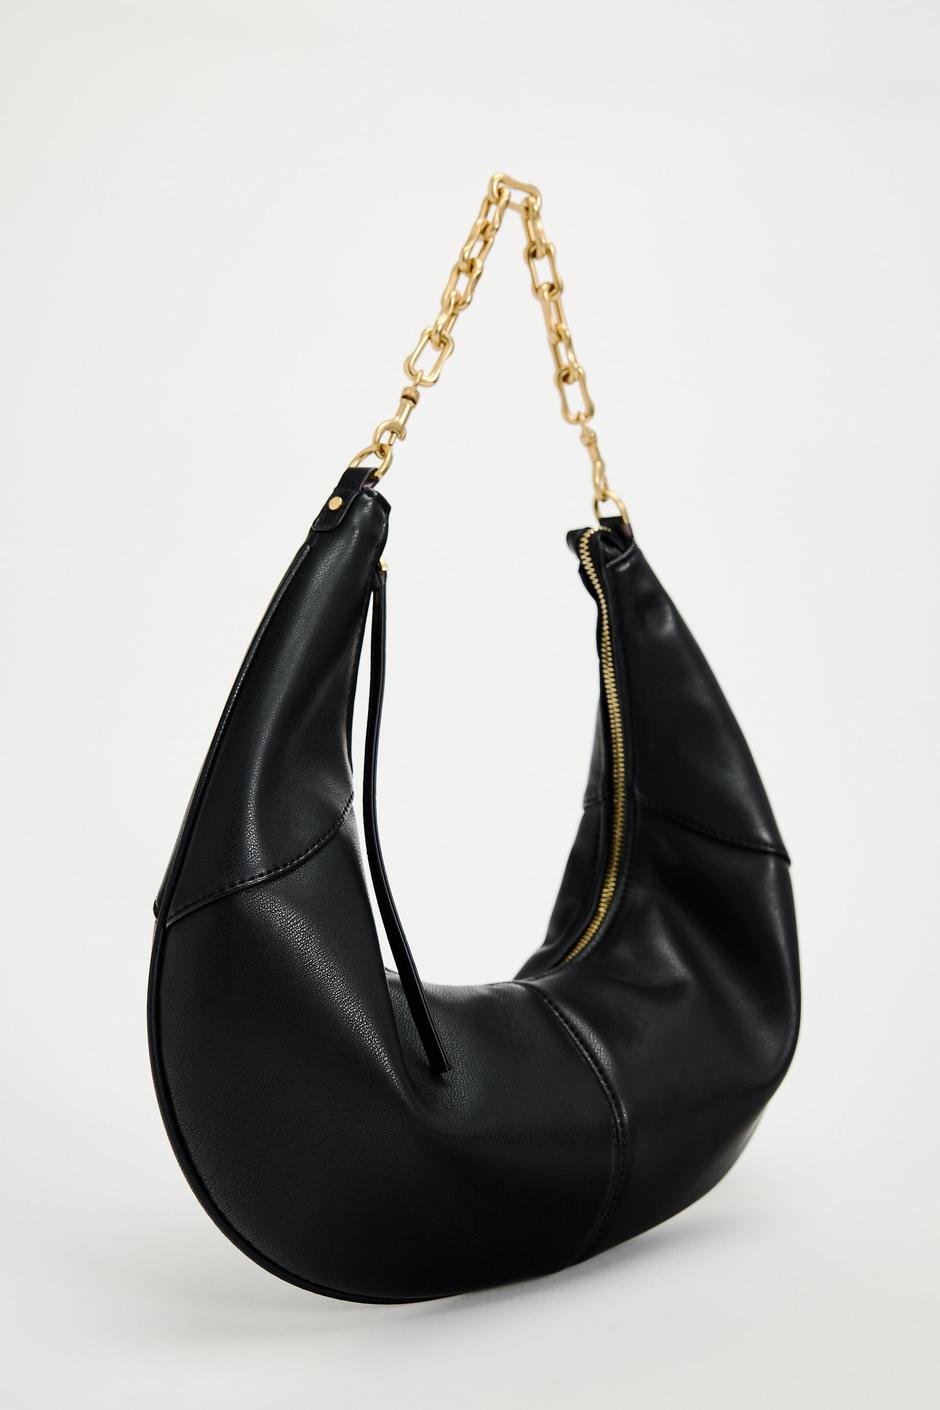 Foto: Zara, crna torba od umjetne kože koja ima zlatni lanac | Autor: Zara